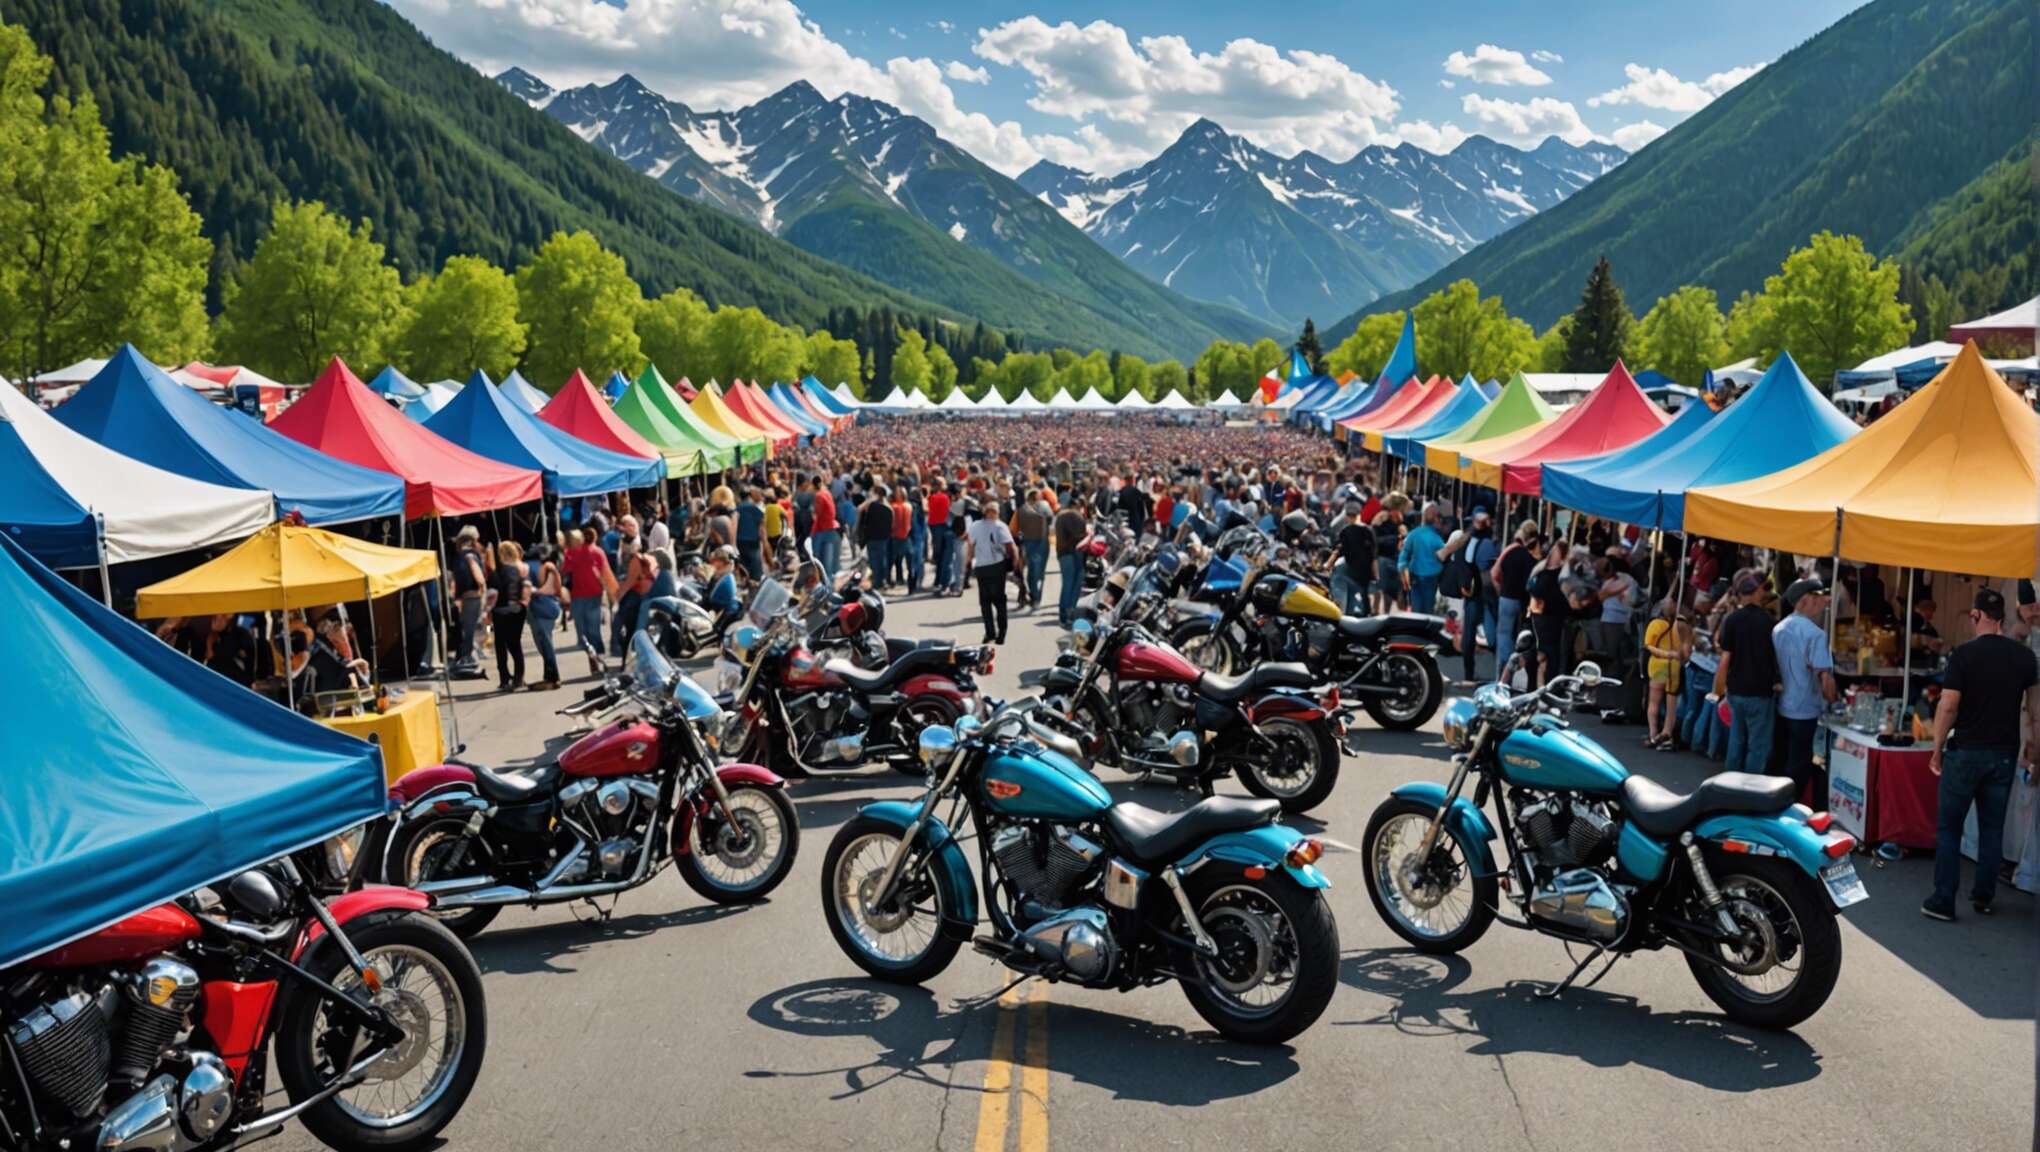 Tour du monde des festivals de moto : une odyssée culturelle et mécanique